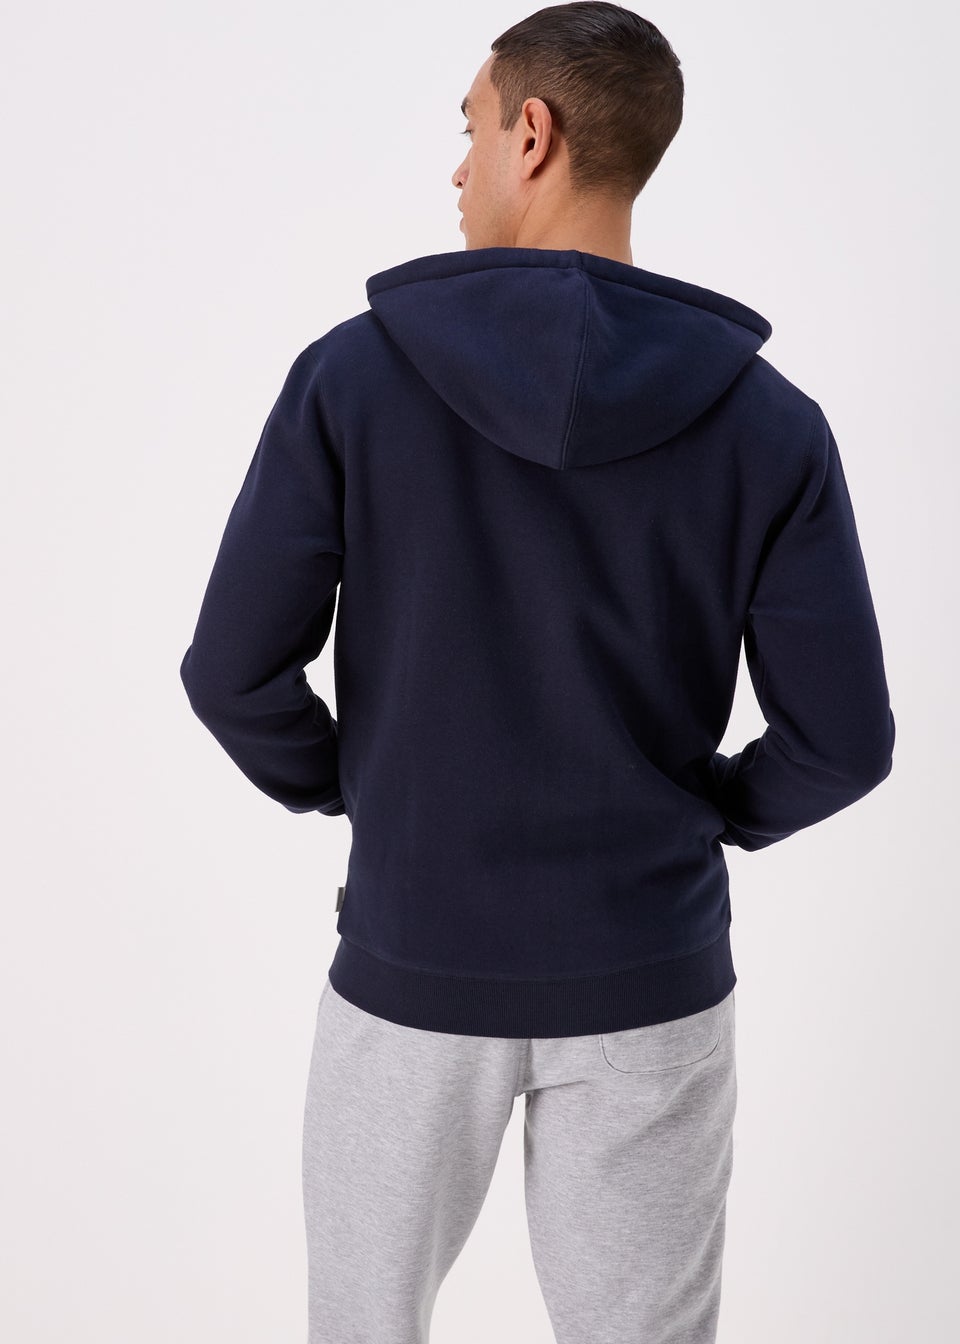 Men's Hoodies & Sweatshirts | Oversized & Zip Up - Matalan